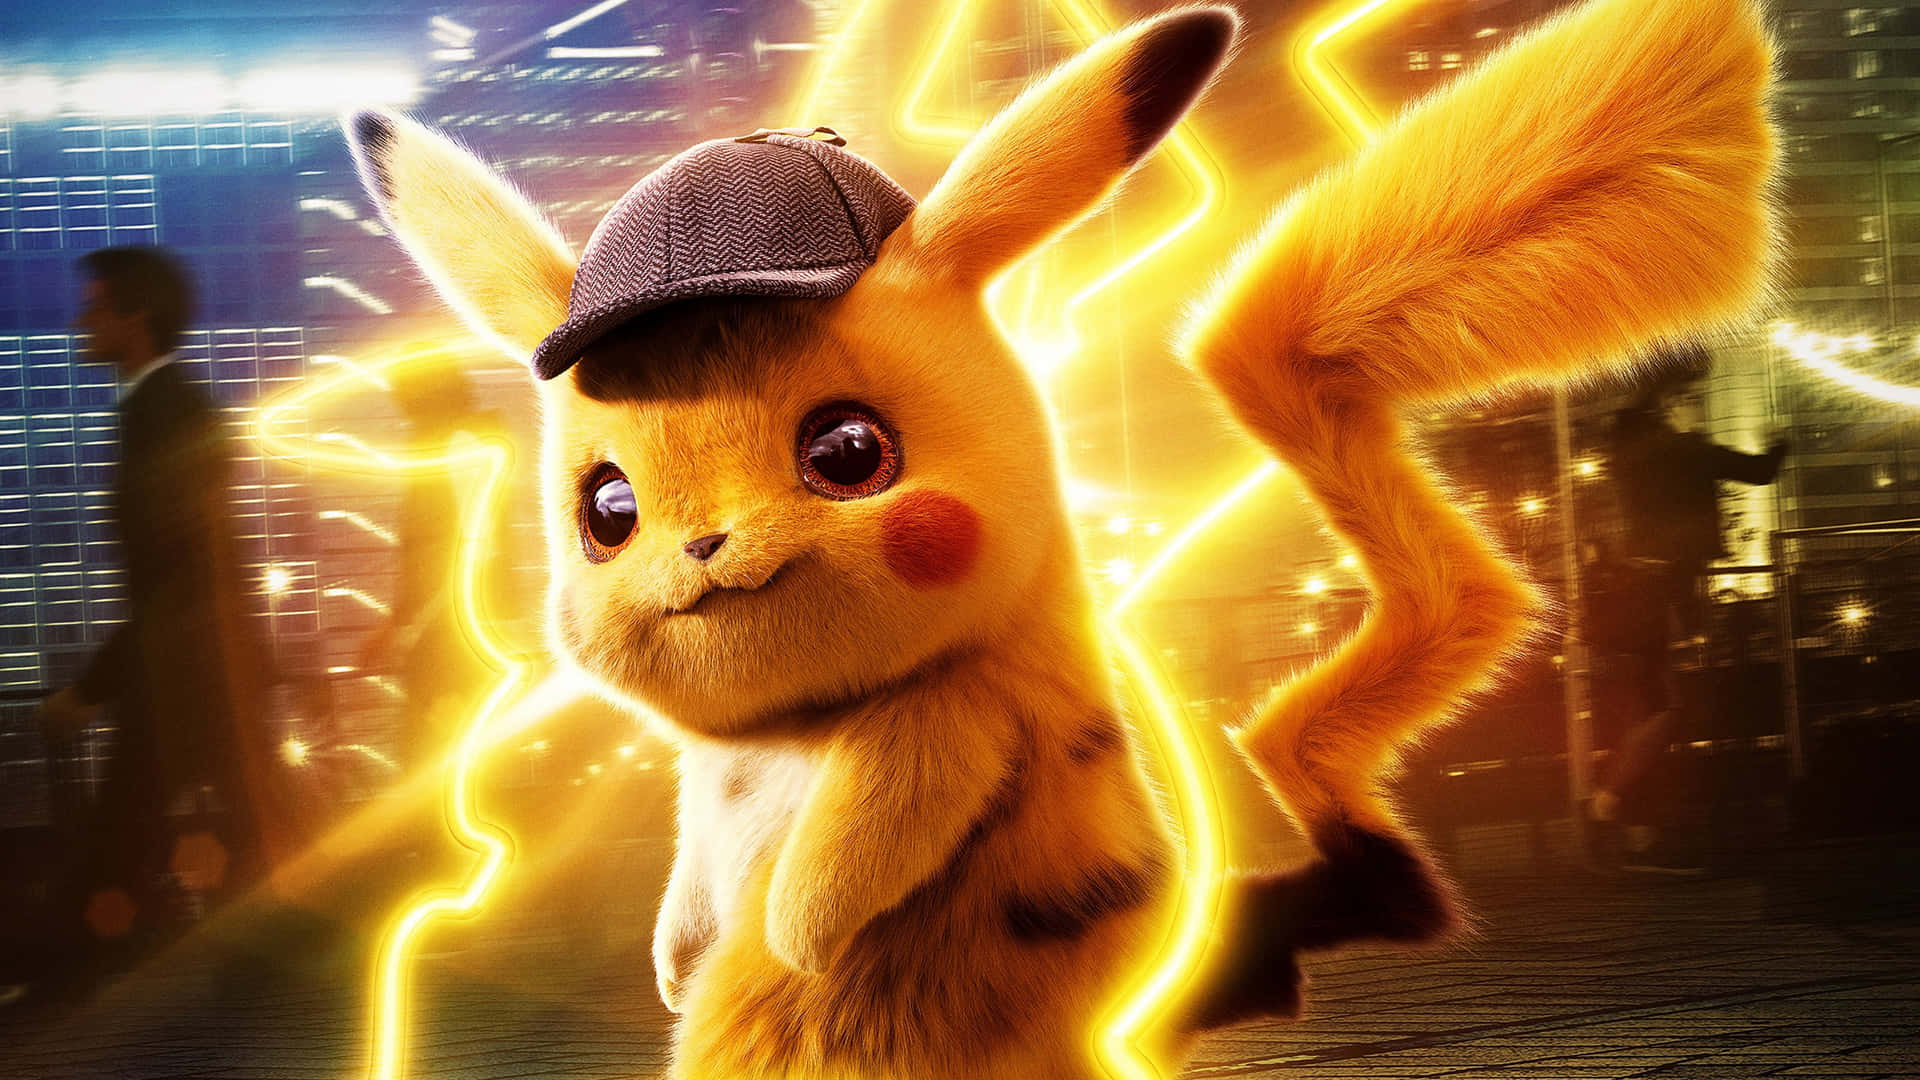 Detektiv Pikachu Pokemon PFP Wallpaper